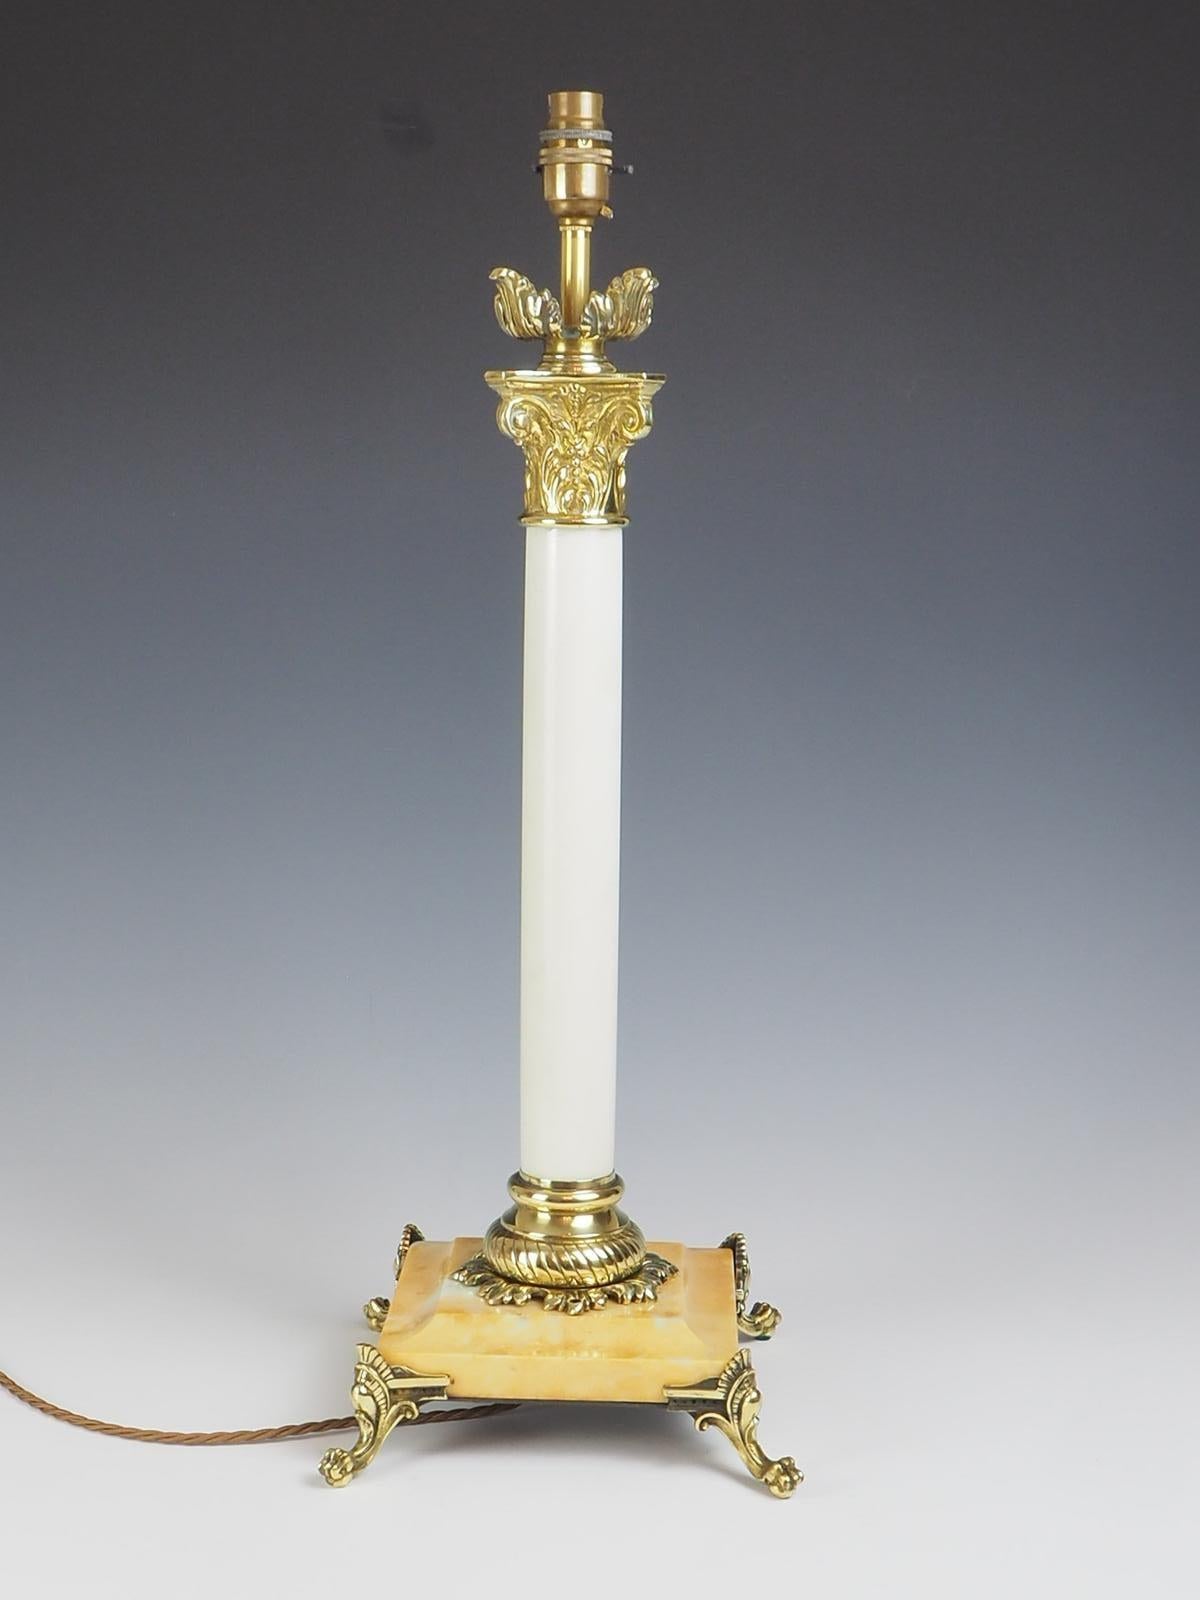 Lampe de table corinthienne en laiton et marbre du XIXe siècle, un mélange étonnant d'élégance intemporelle et d'artisanat exquis. Fabriquée avec une colonne en marbre blanc massif et une base en marbre pêche, cette lampe respire la